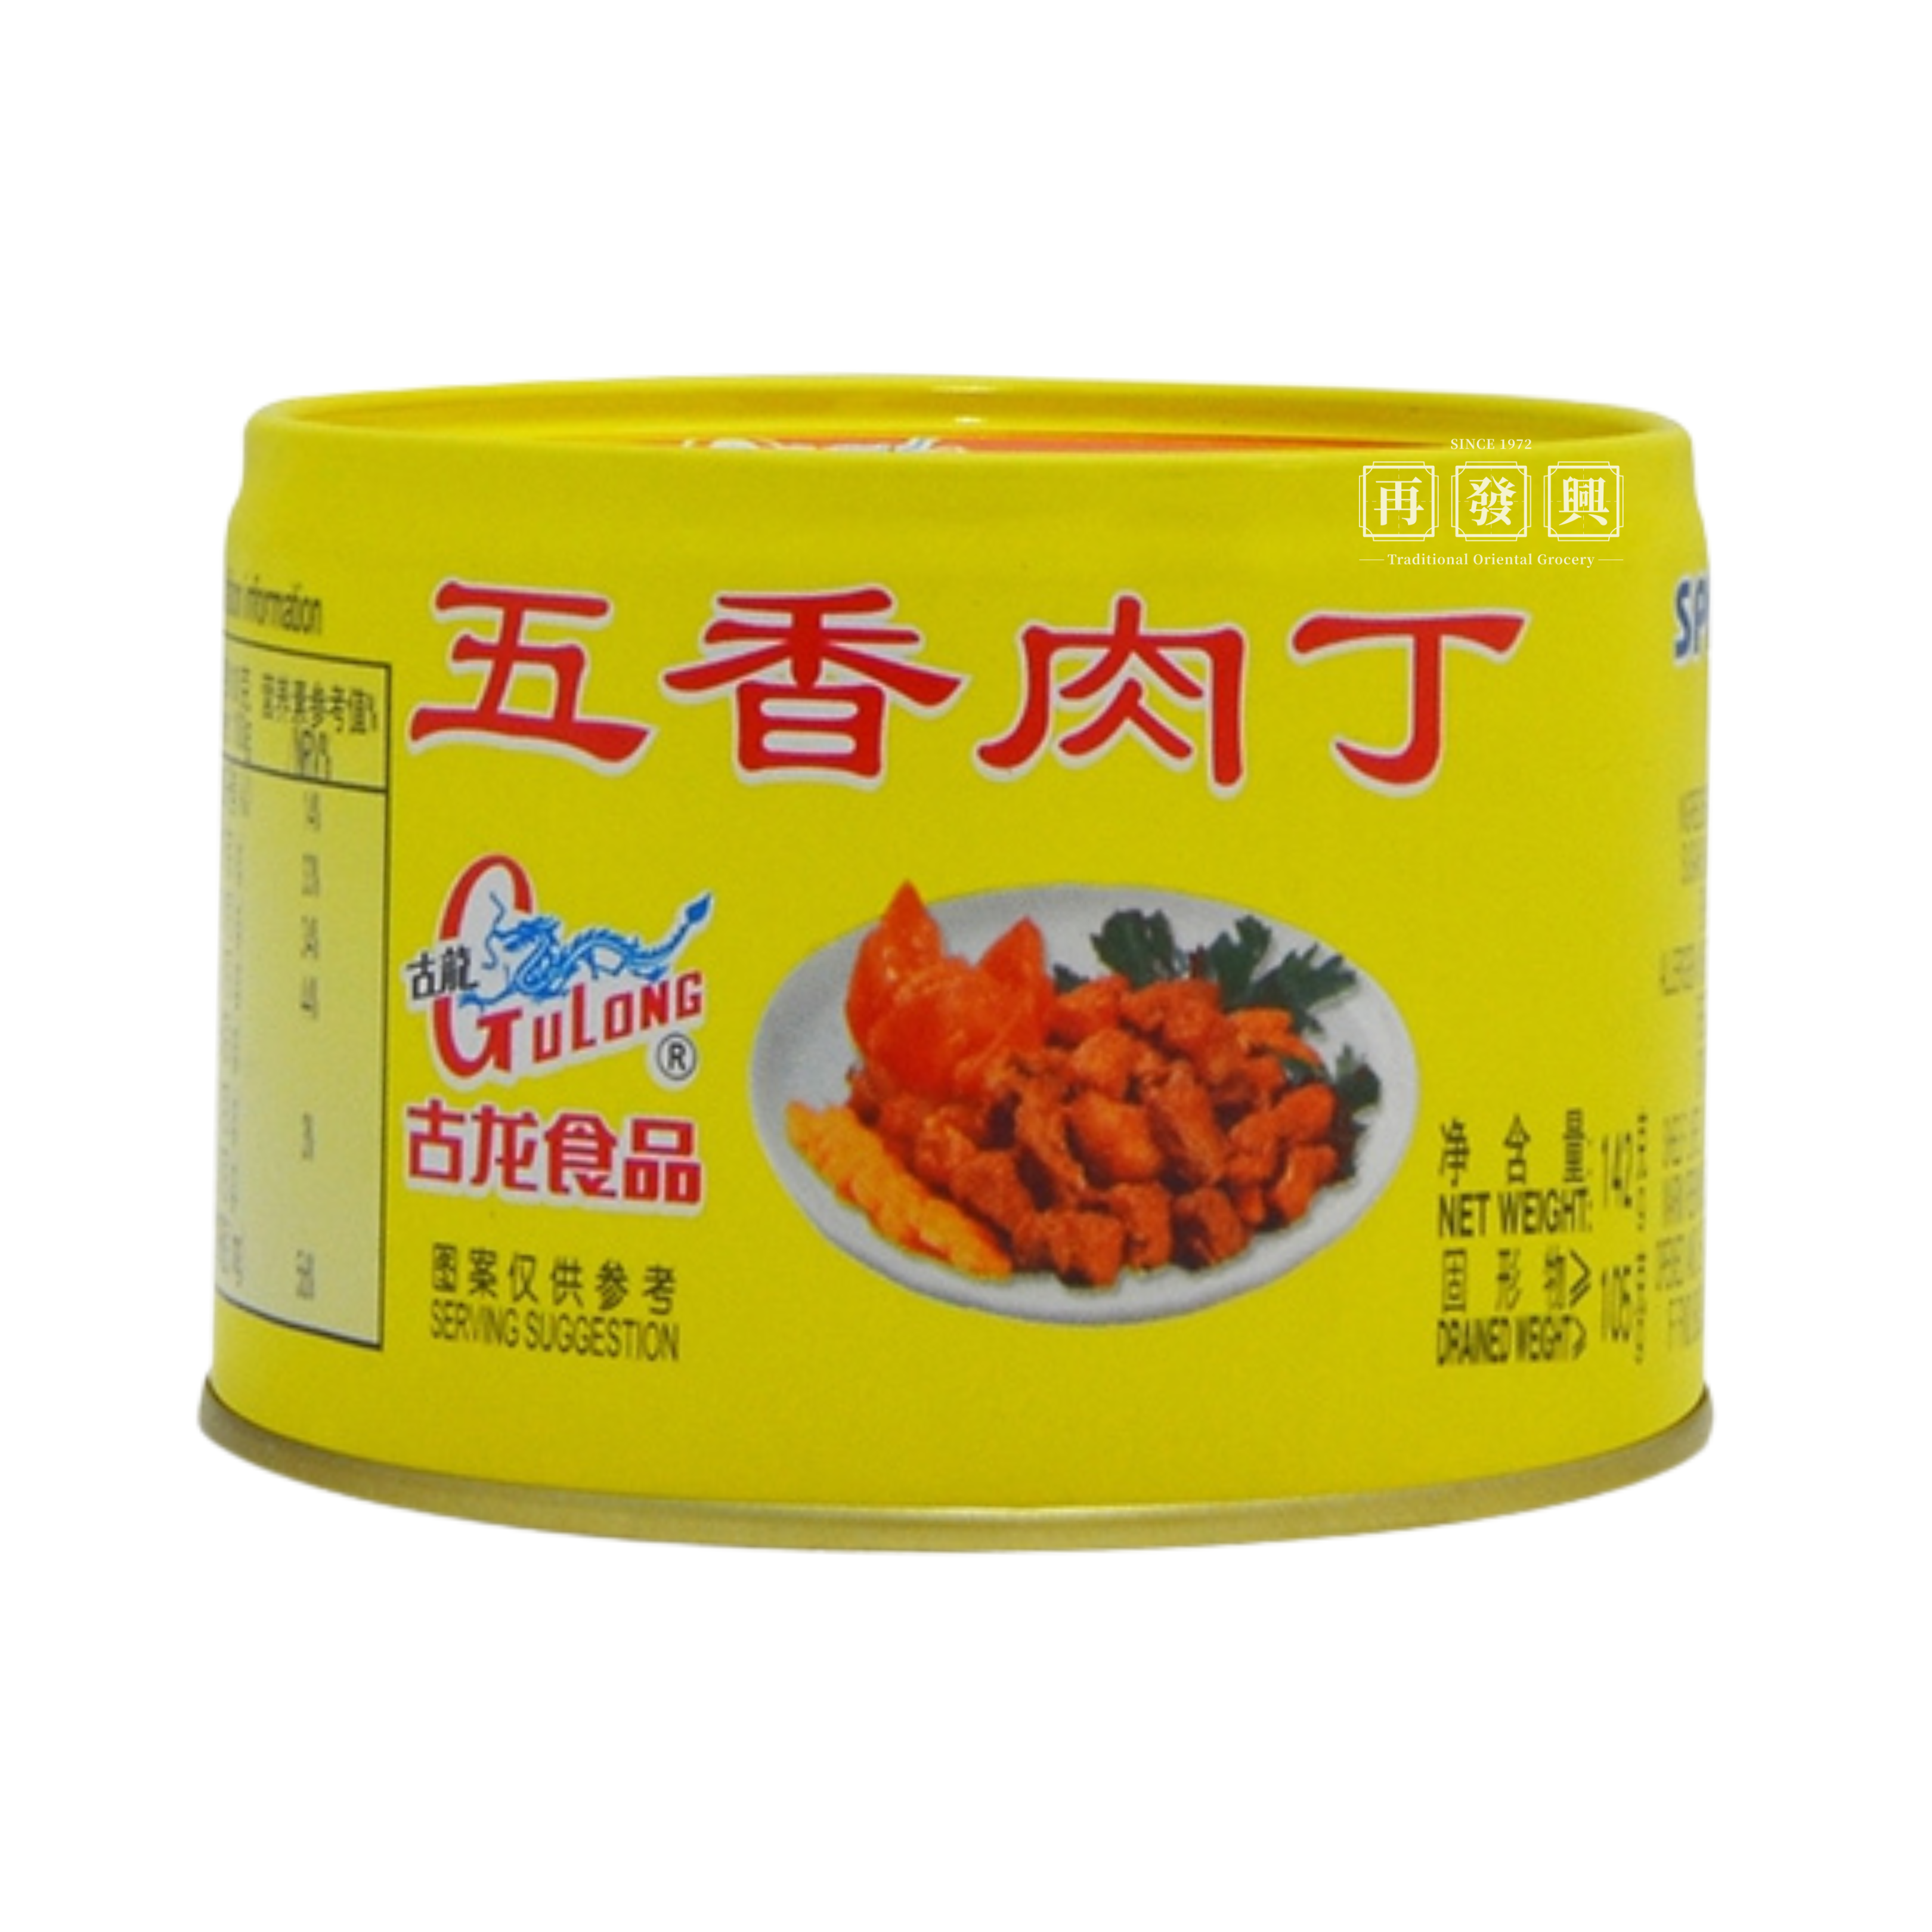 GuLong Spiced Pork Cubes 古龙五香肉丁 142g